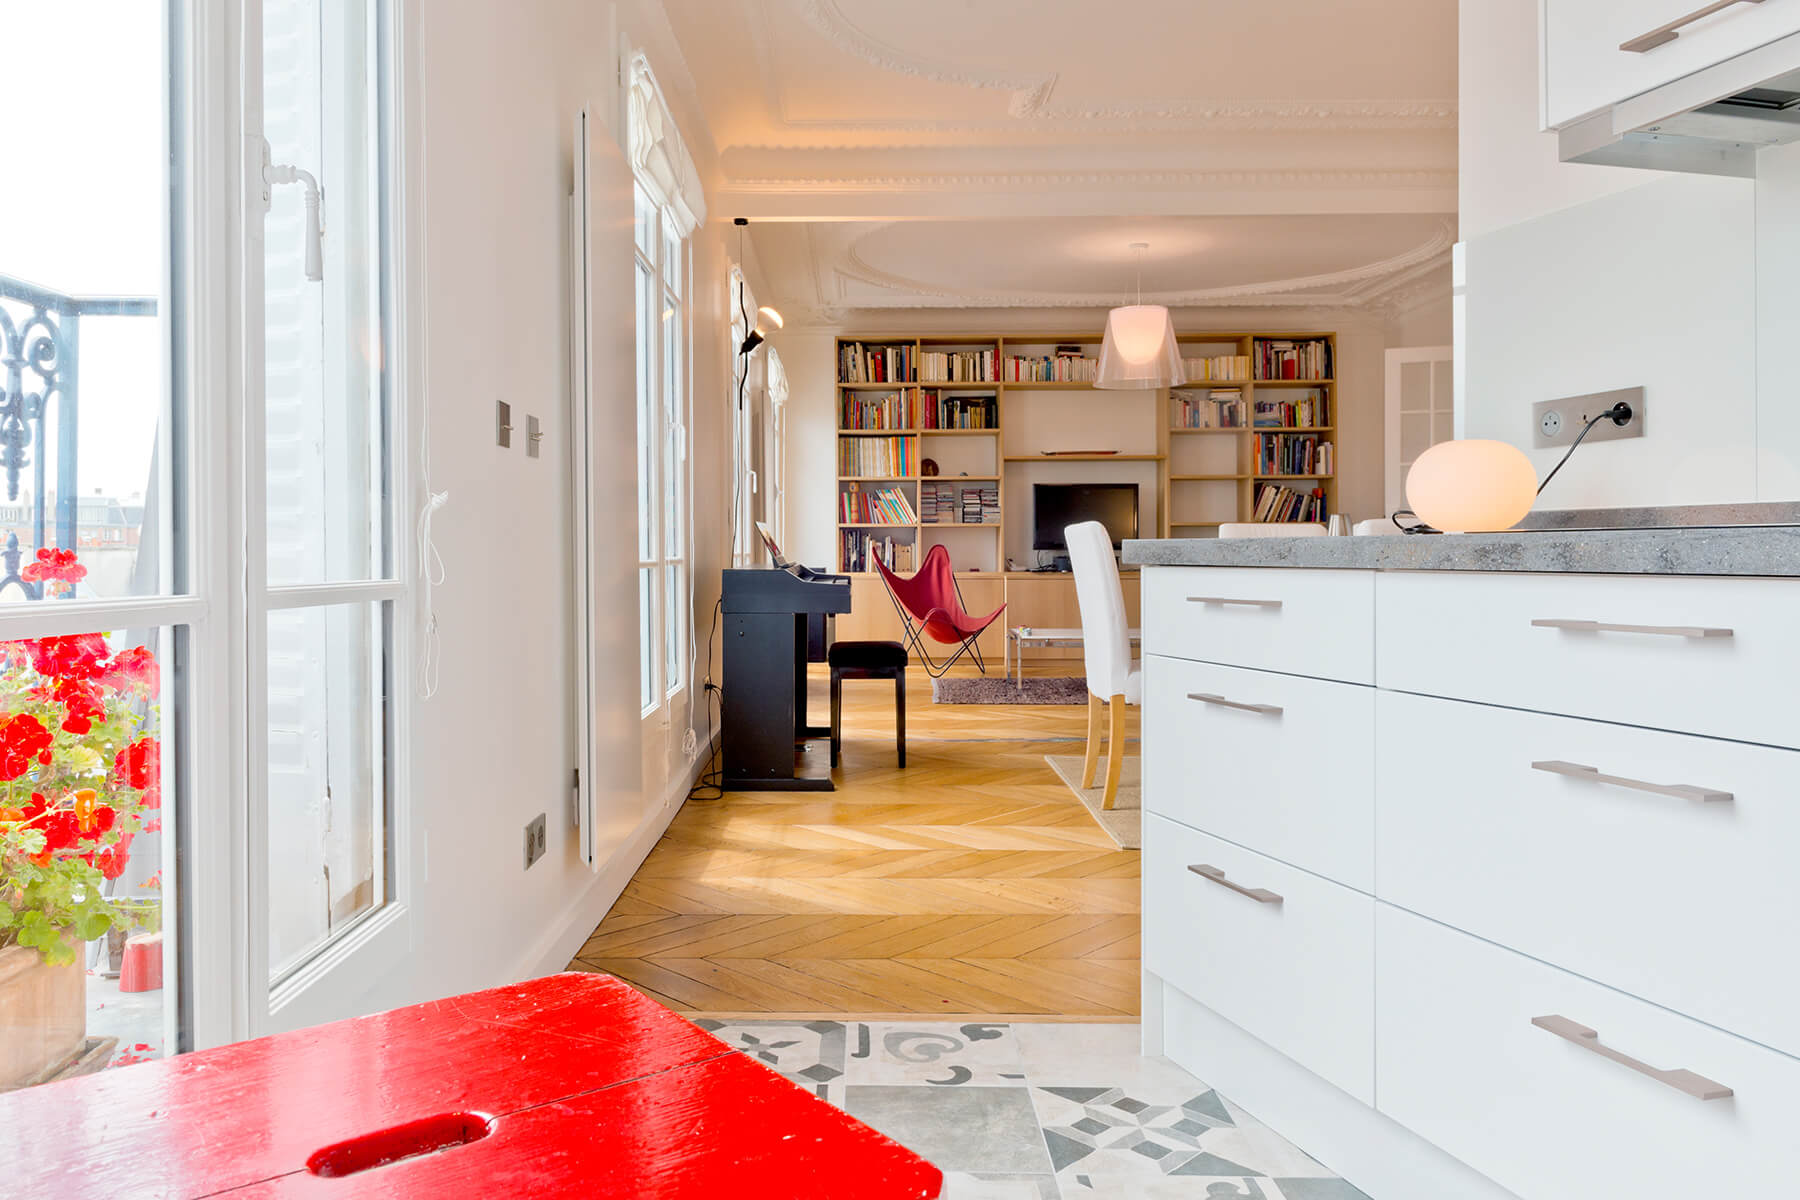 Concrétisez votre projet immobilier, achetez un bien immobilier à Rennes avec le Cabinet Martin